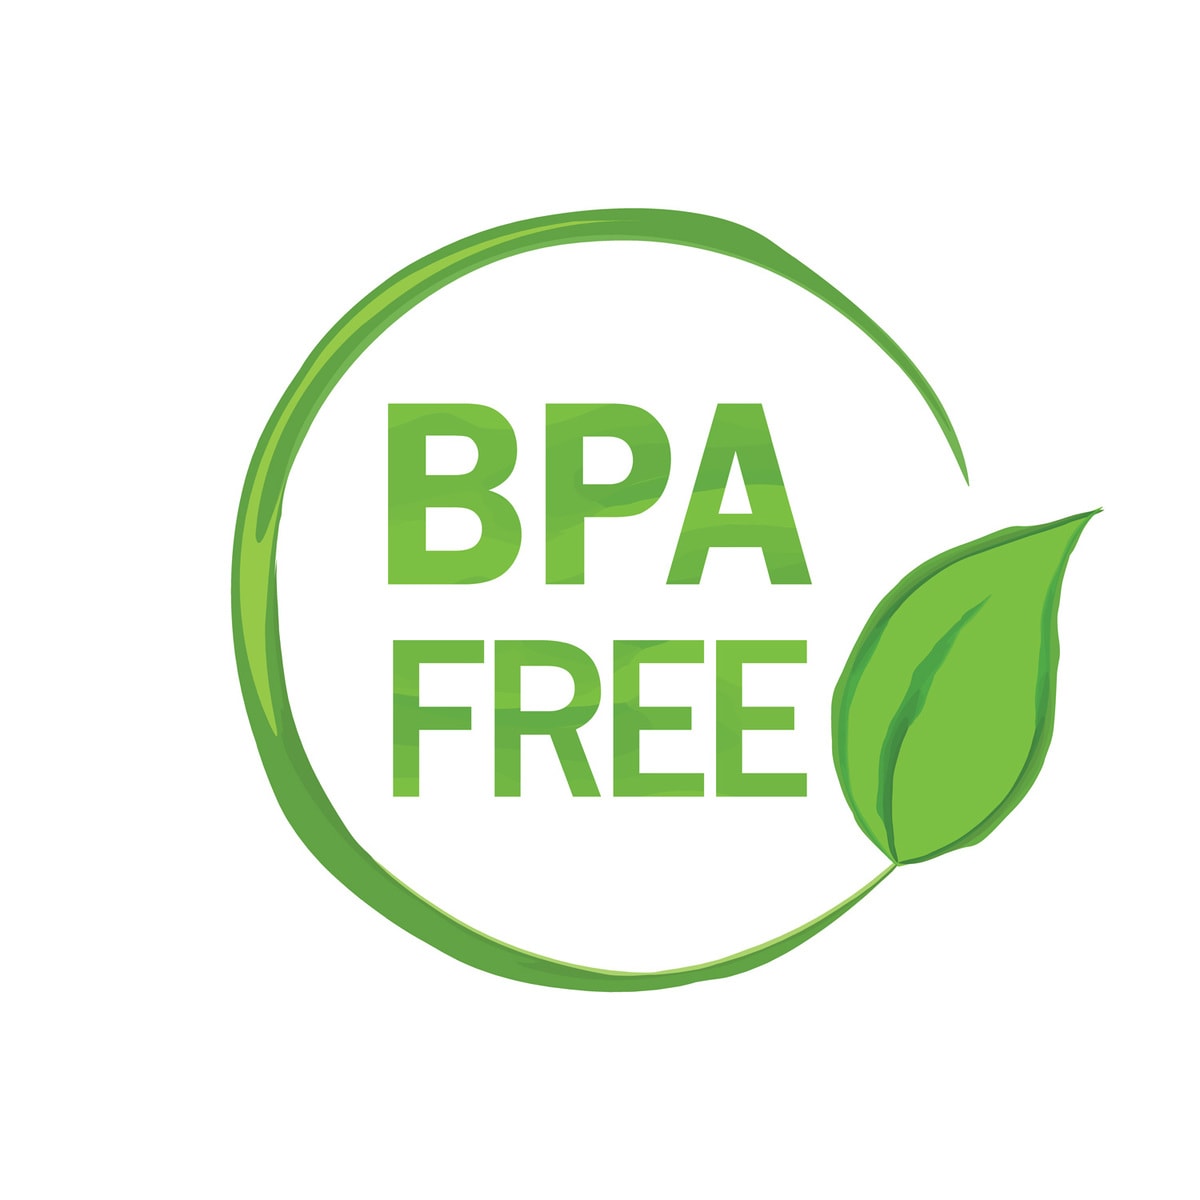 BPA FREE logo. 